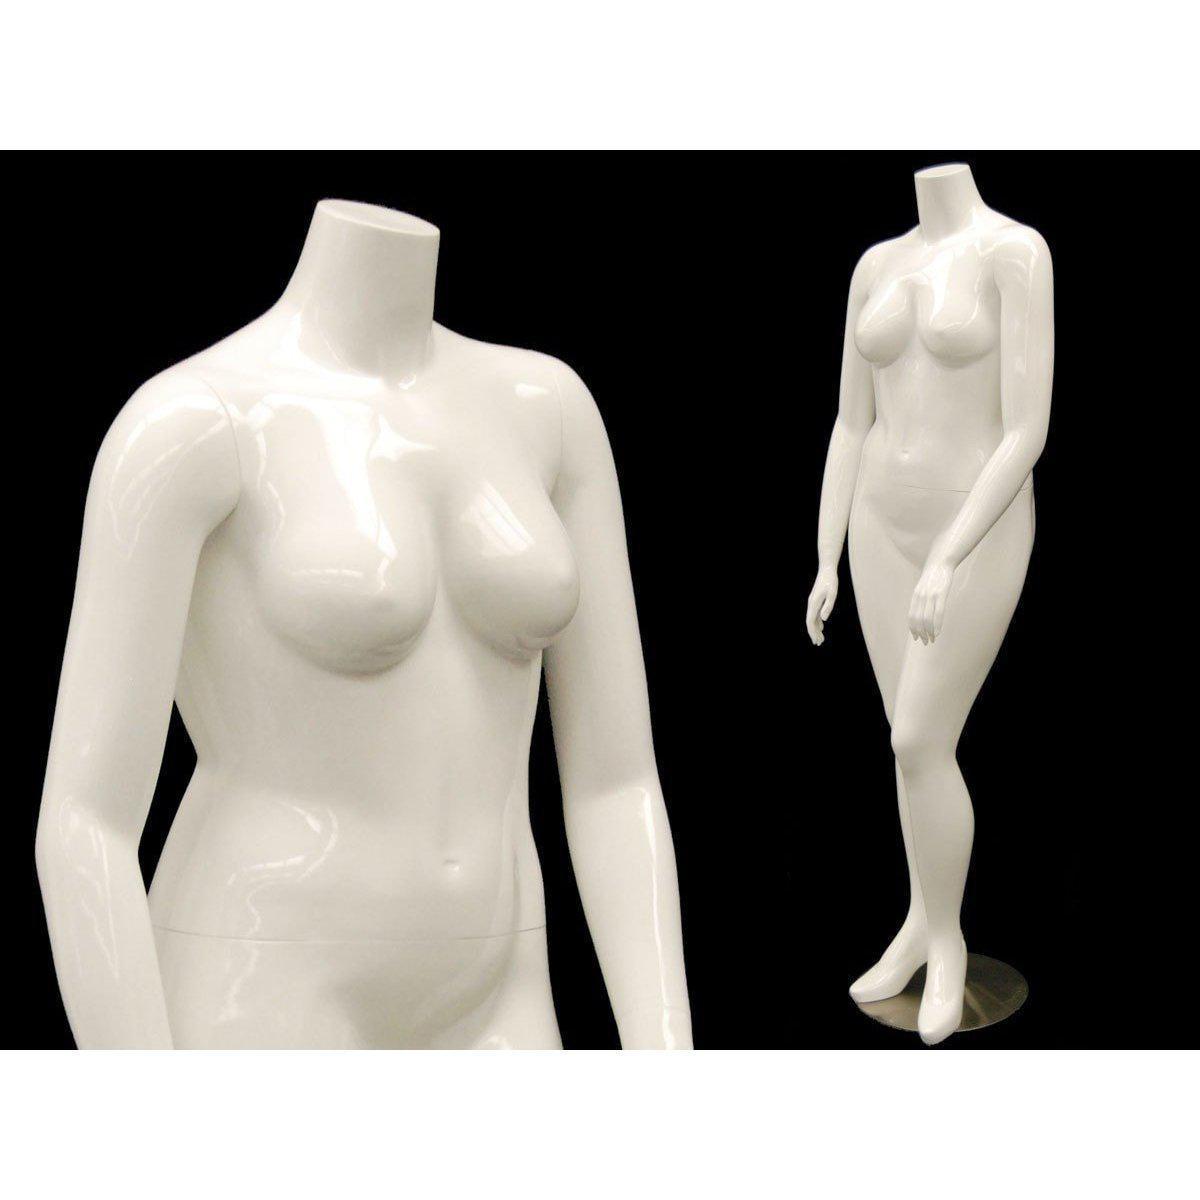 Full Body & Torso Female Mannequins For Sale